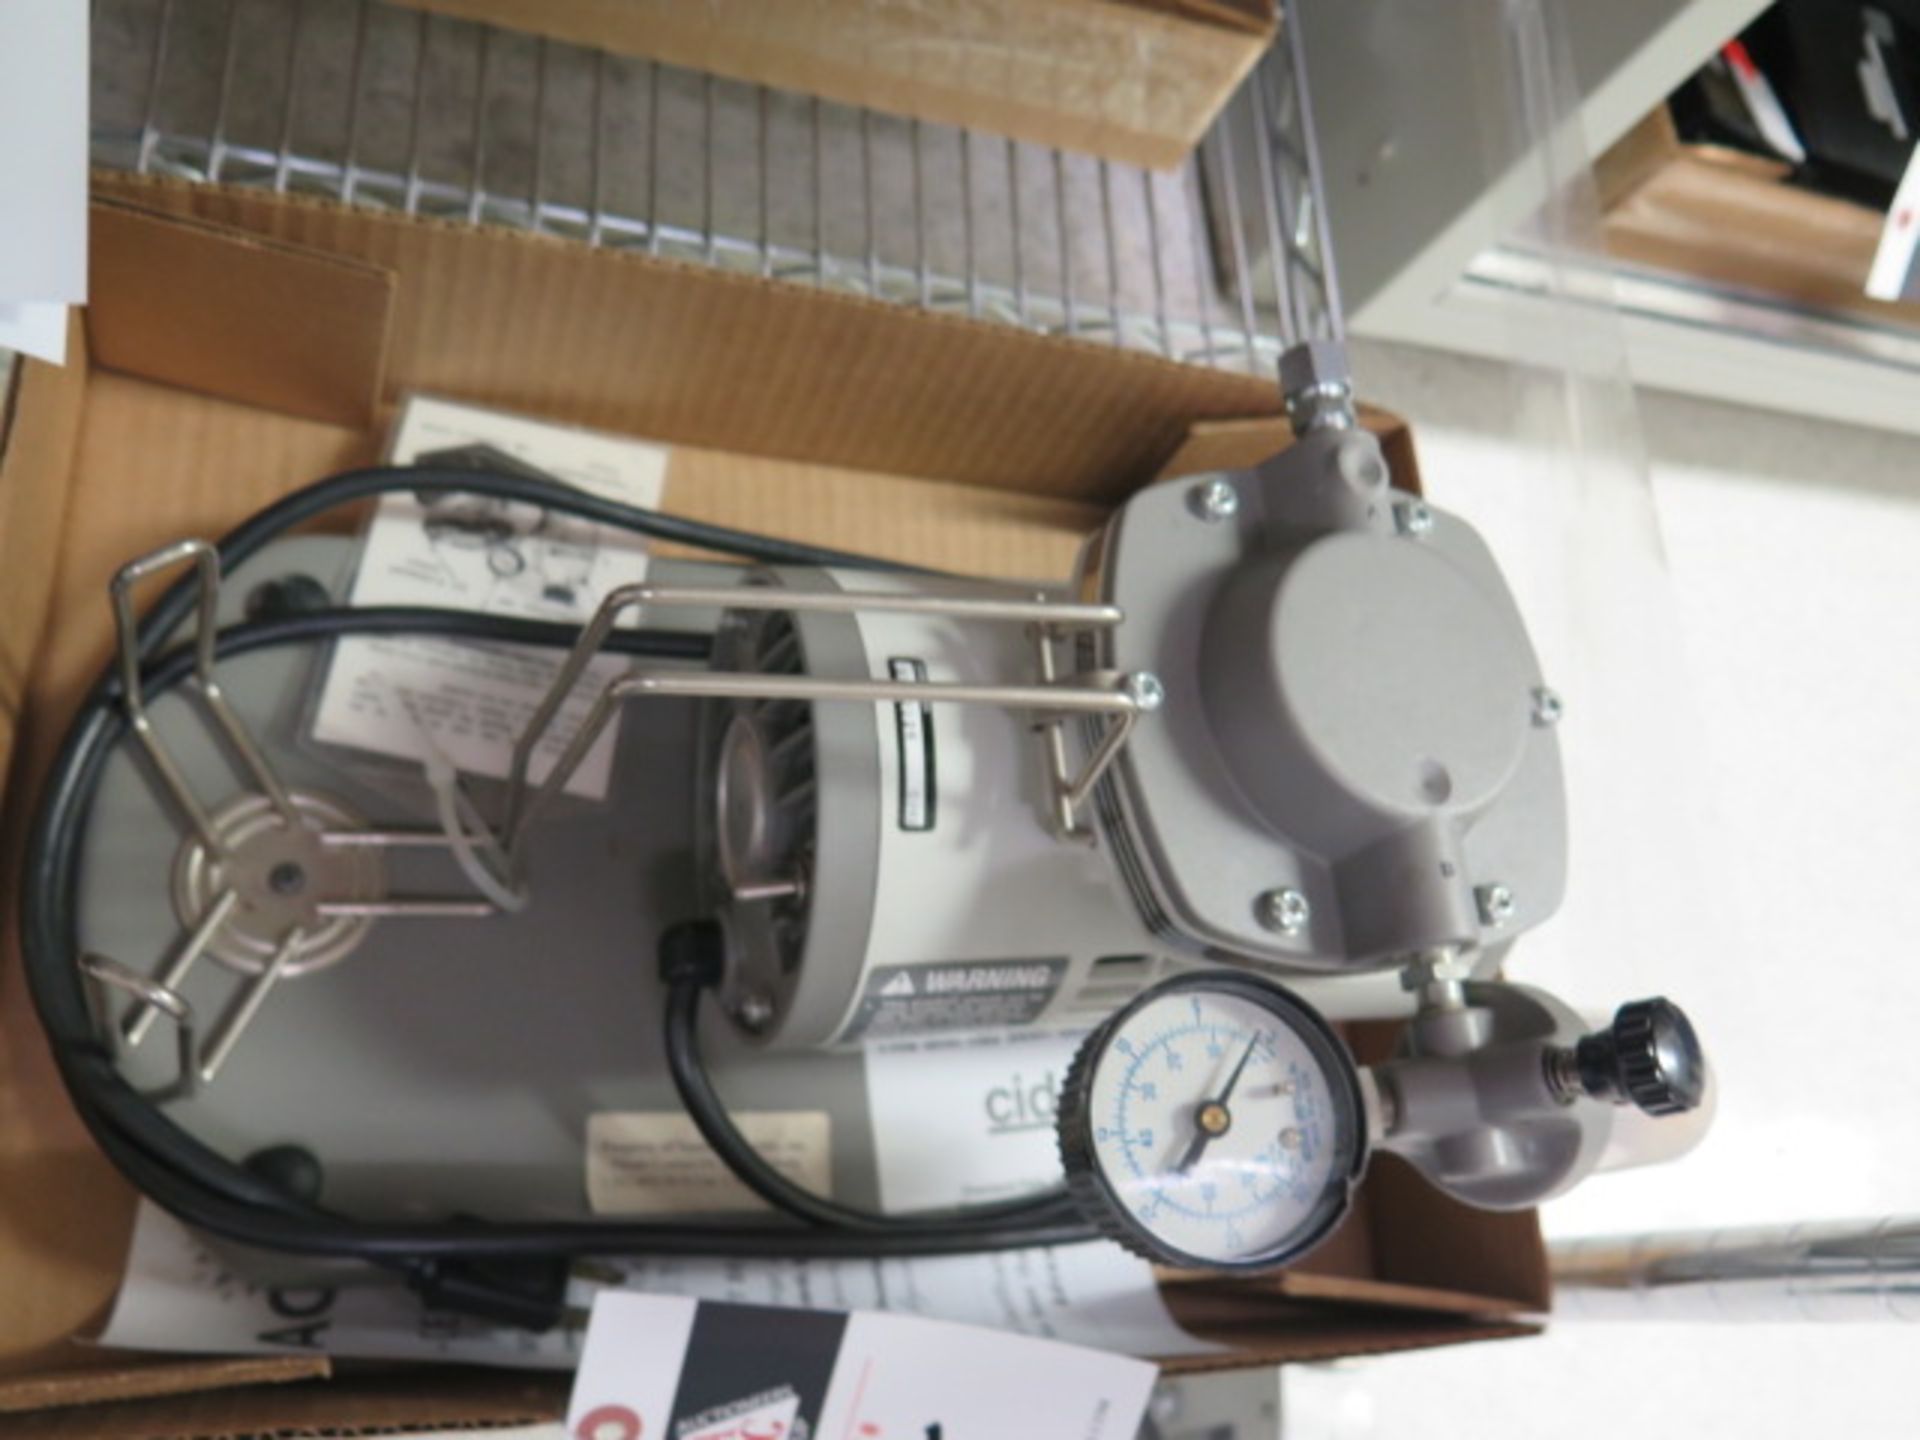 Cida Vacuum Pump (SOLD AS-IS - NO WARRANTY) - Image 2 of 6